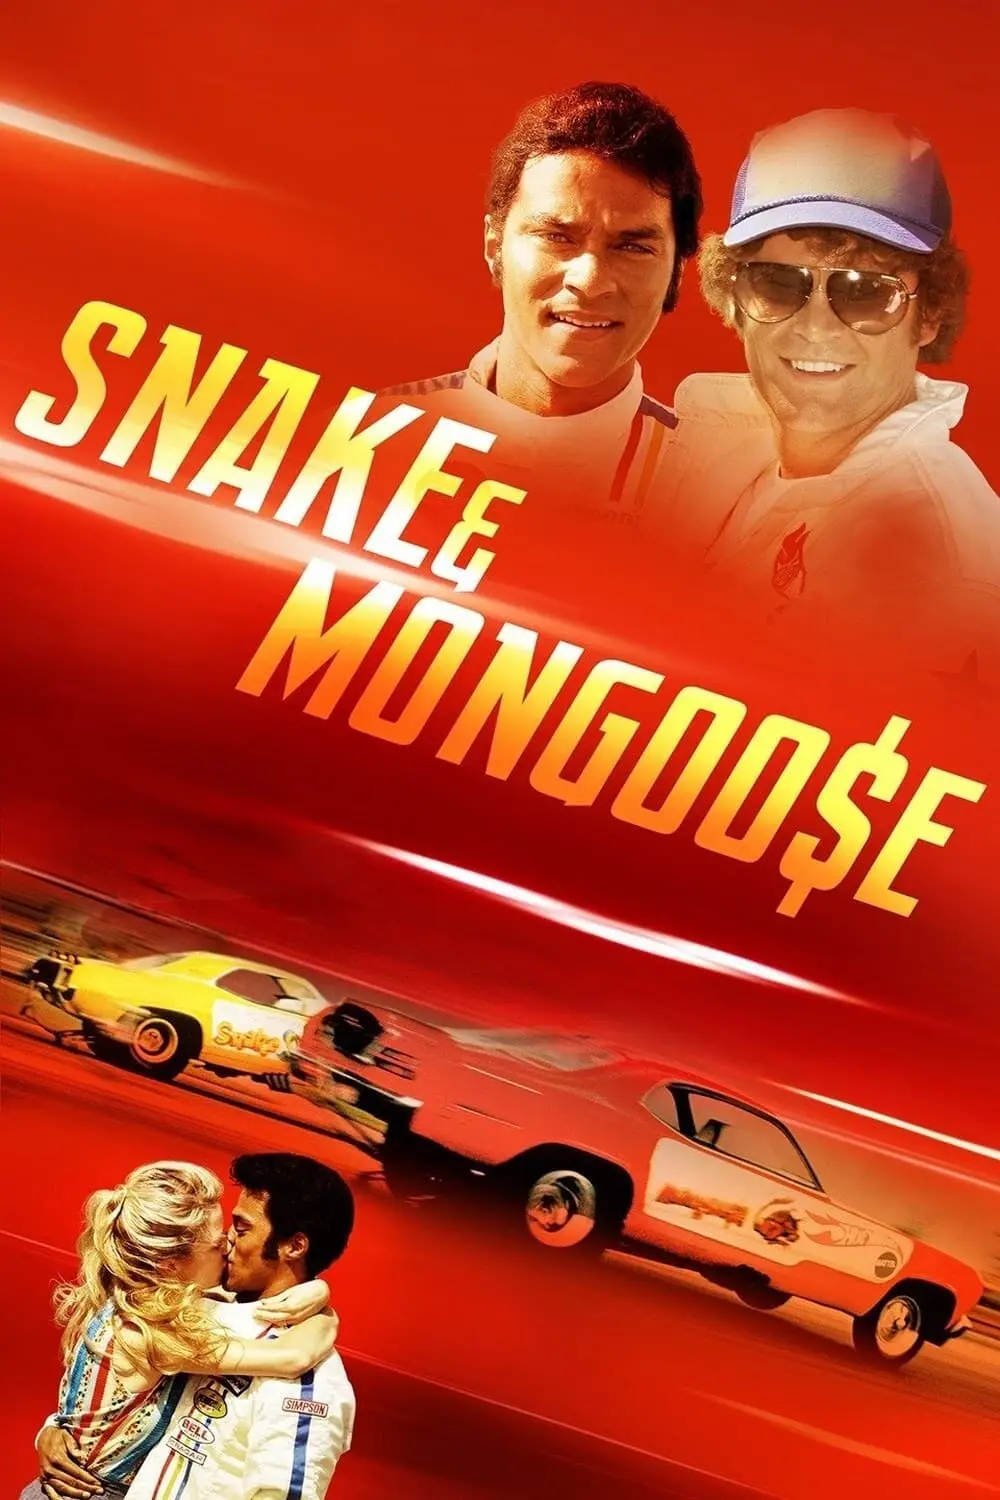 Snake & Mongoose_peliplat